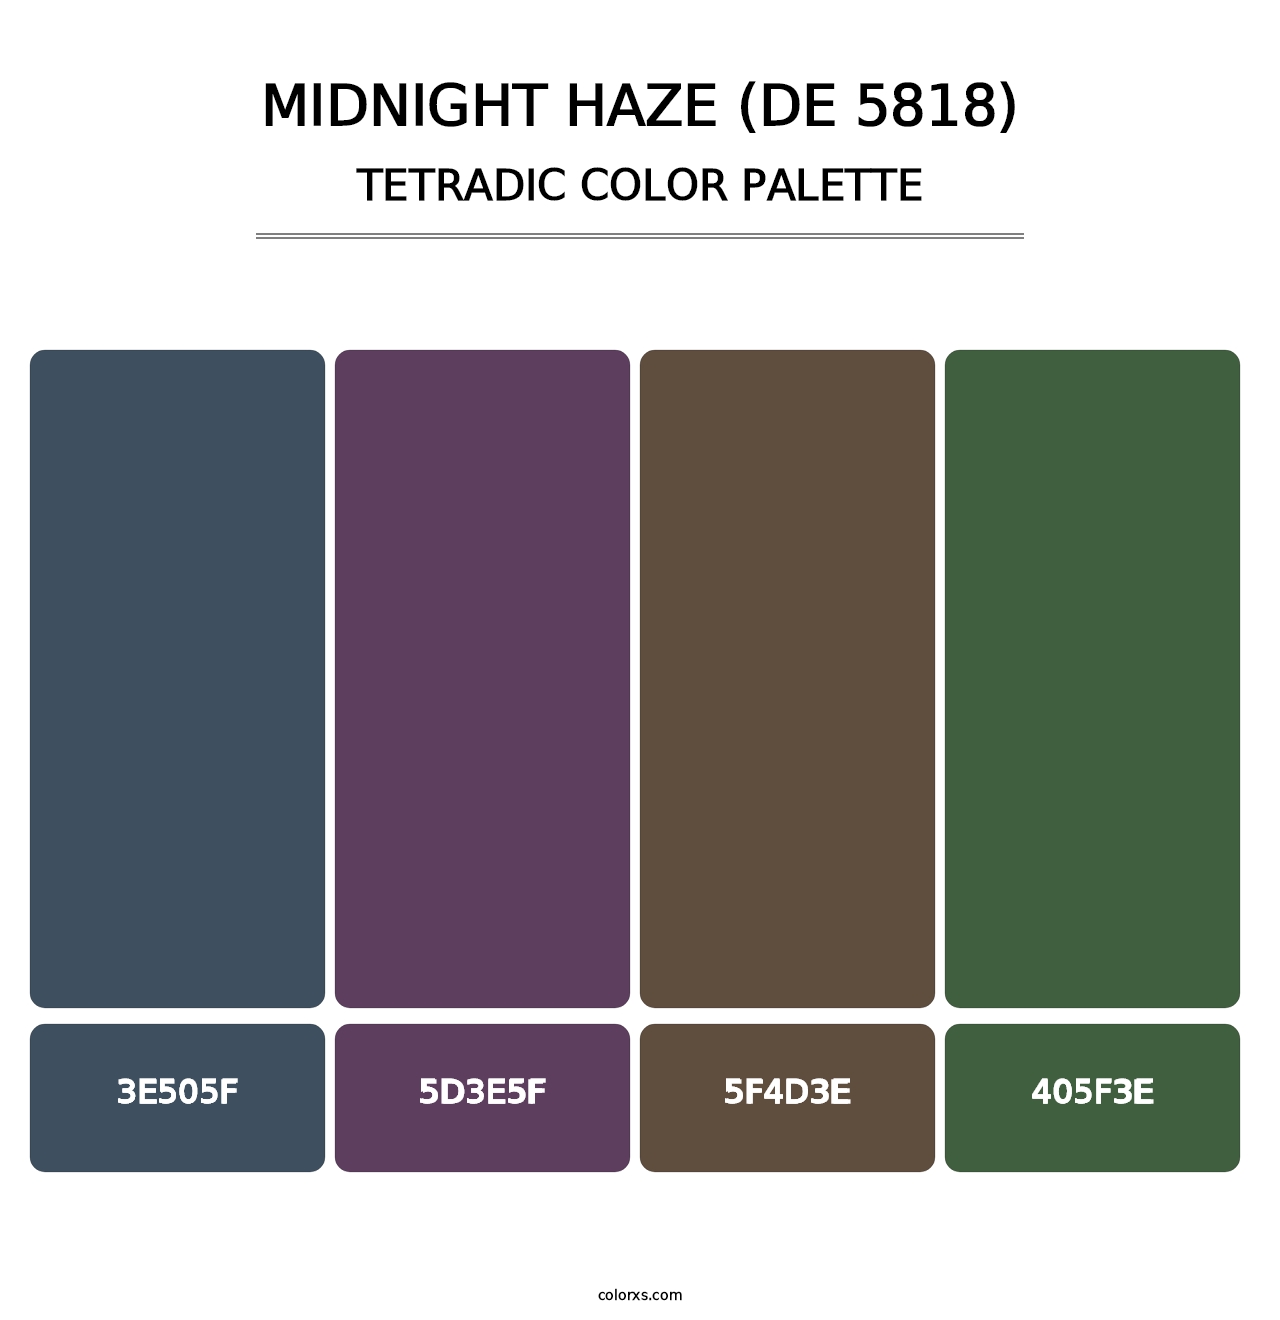 Midnight Haze (DE 5818) - Tetradic Color Palette